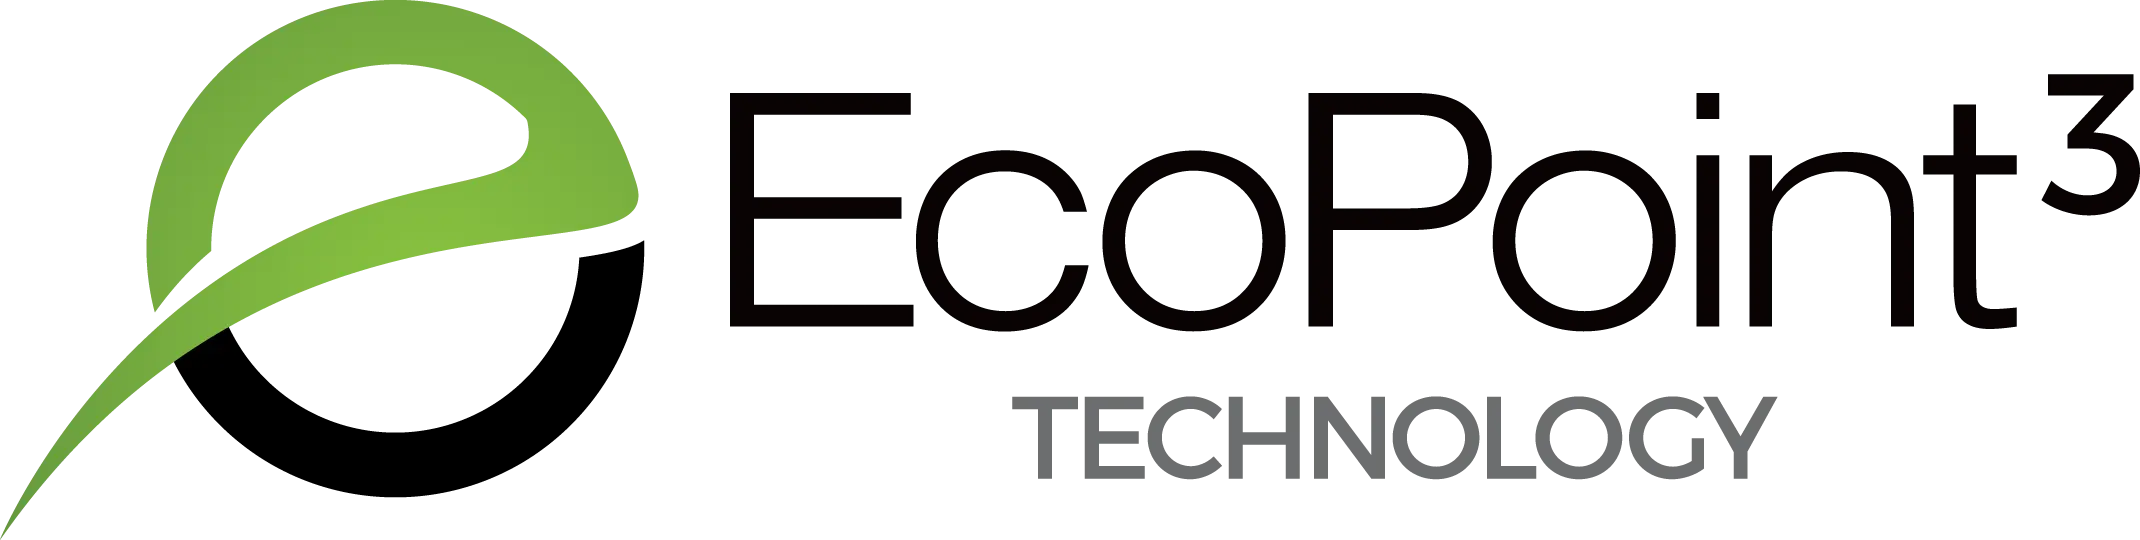 Ecopoint 3 csúcs gumikeverési technika